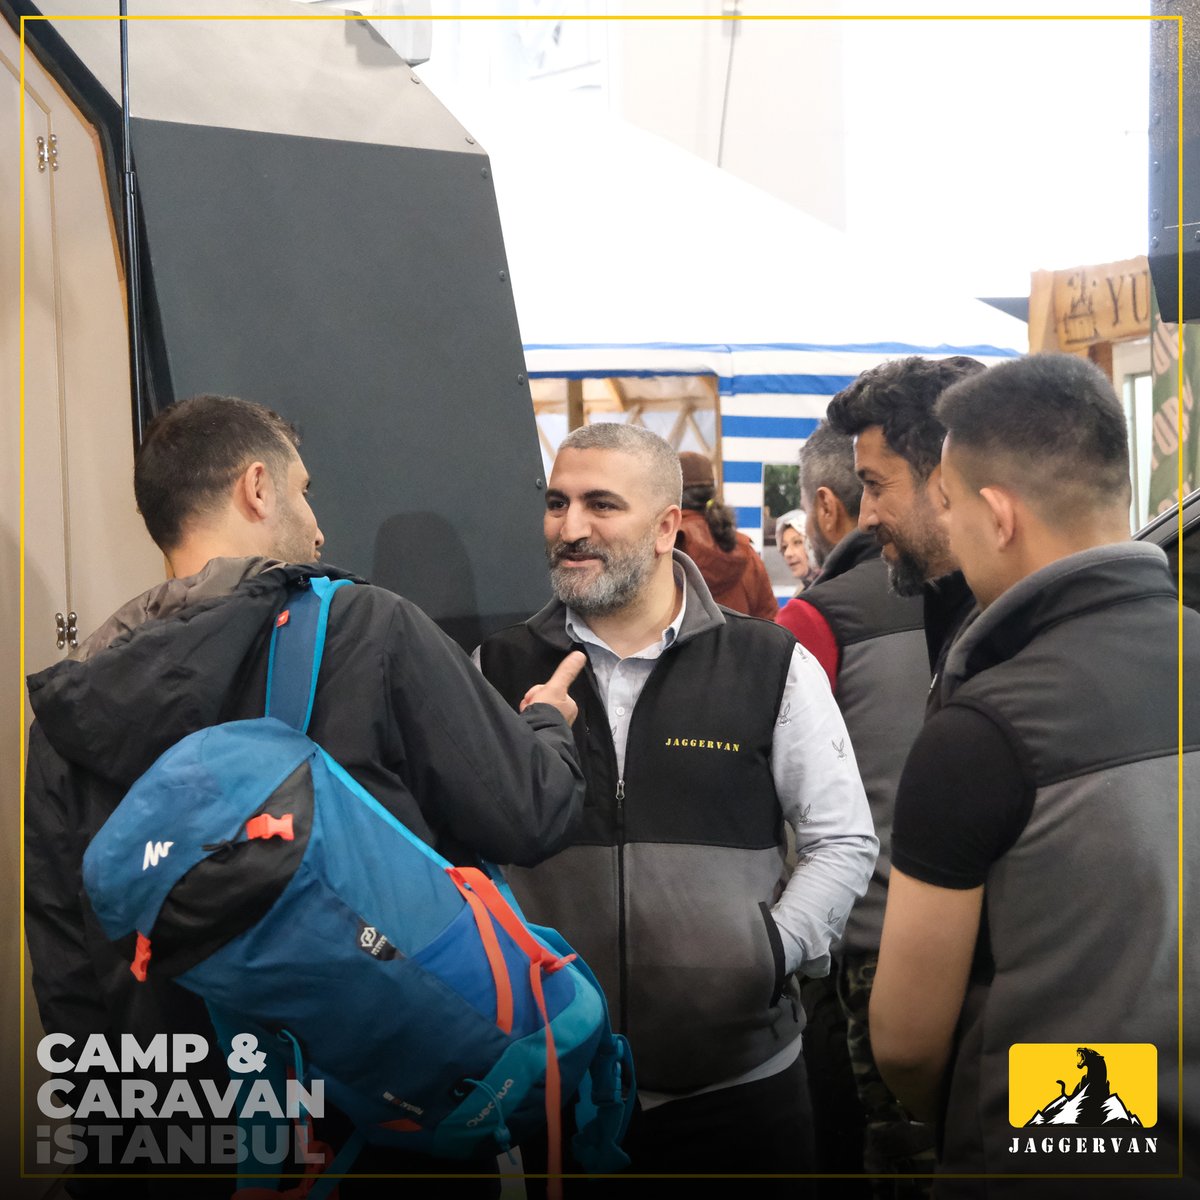 5 Farklı Modelimiz ile katıldığımız ''Camp Caravan İstanbul'' fuarında gösterdiğiniz yoğun ilginiz için Jaggervan Ailesi olarak çok teşekkür ederiz. 
.
Sizi güçlü,özgür ve konforlu Off-Road Jaggervan karavan modelleri ile tanışmaya fabrika/showroomumuza davet ediyoruz !.